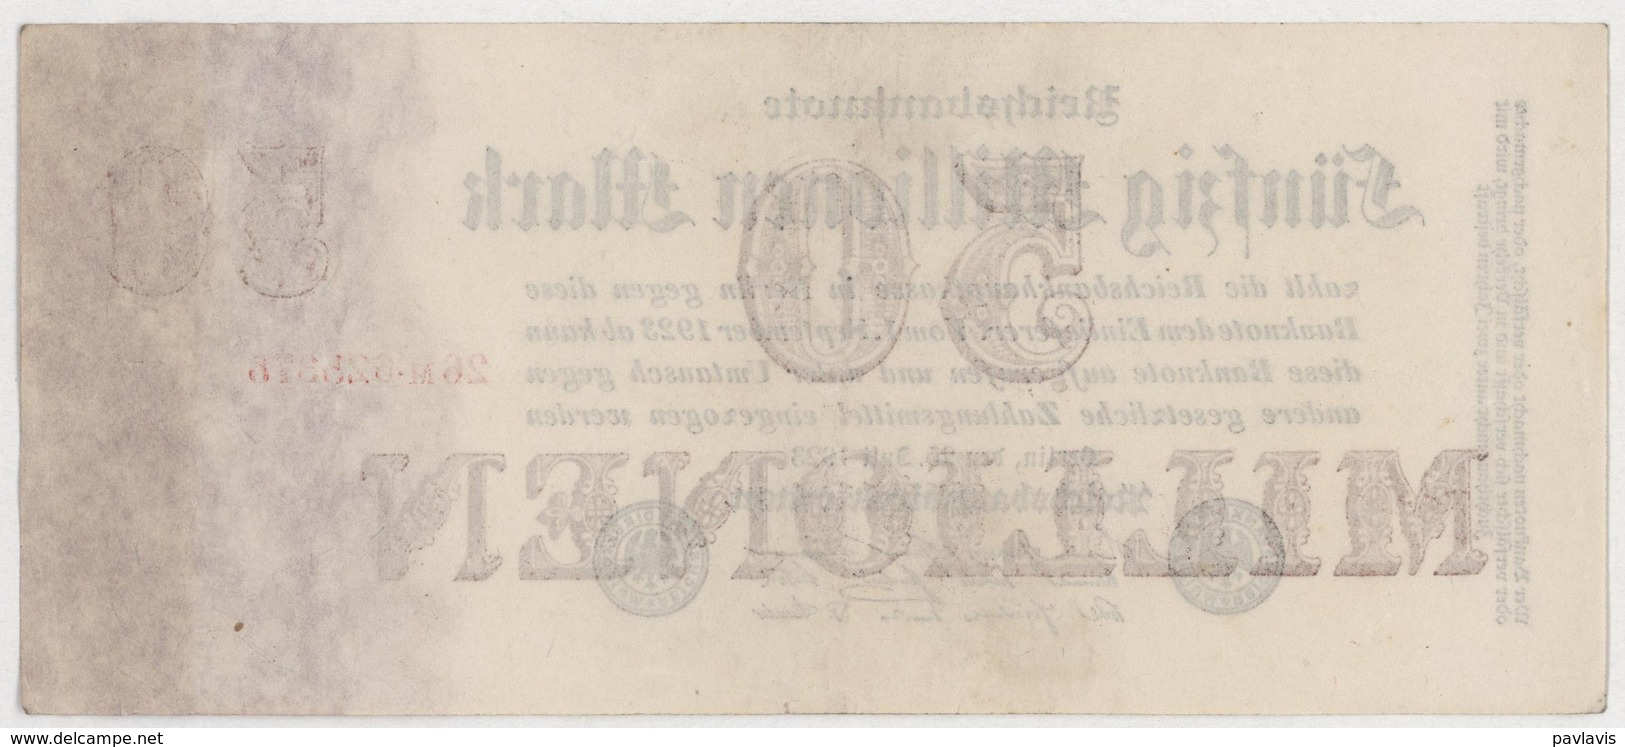 50 Millionen Mark / 50 000 000 Mark - Reichsbanknote - German Reich / Deutsches Reich - Year 1923 - 50 Mio. Mark